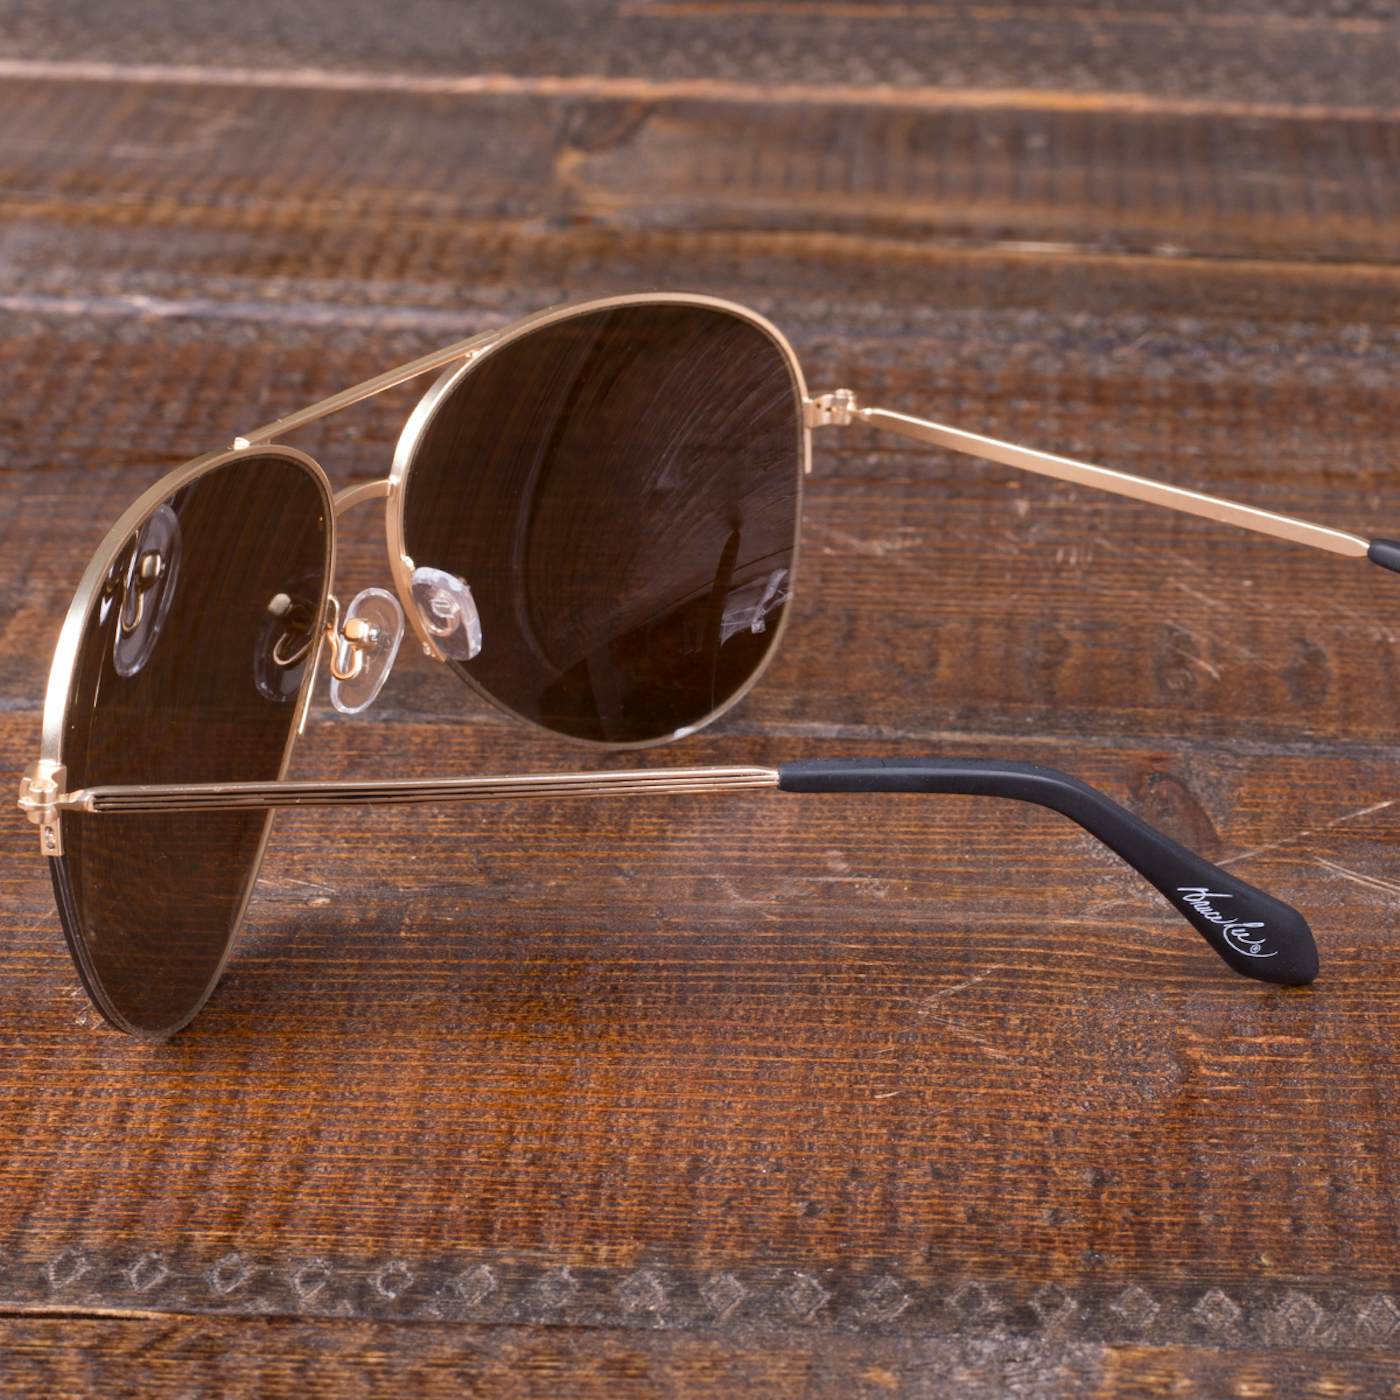 Bruce Lee Aviator Sunglasses w/ case